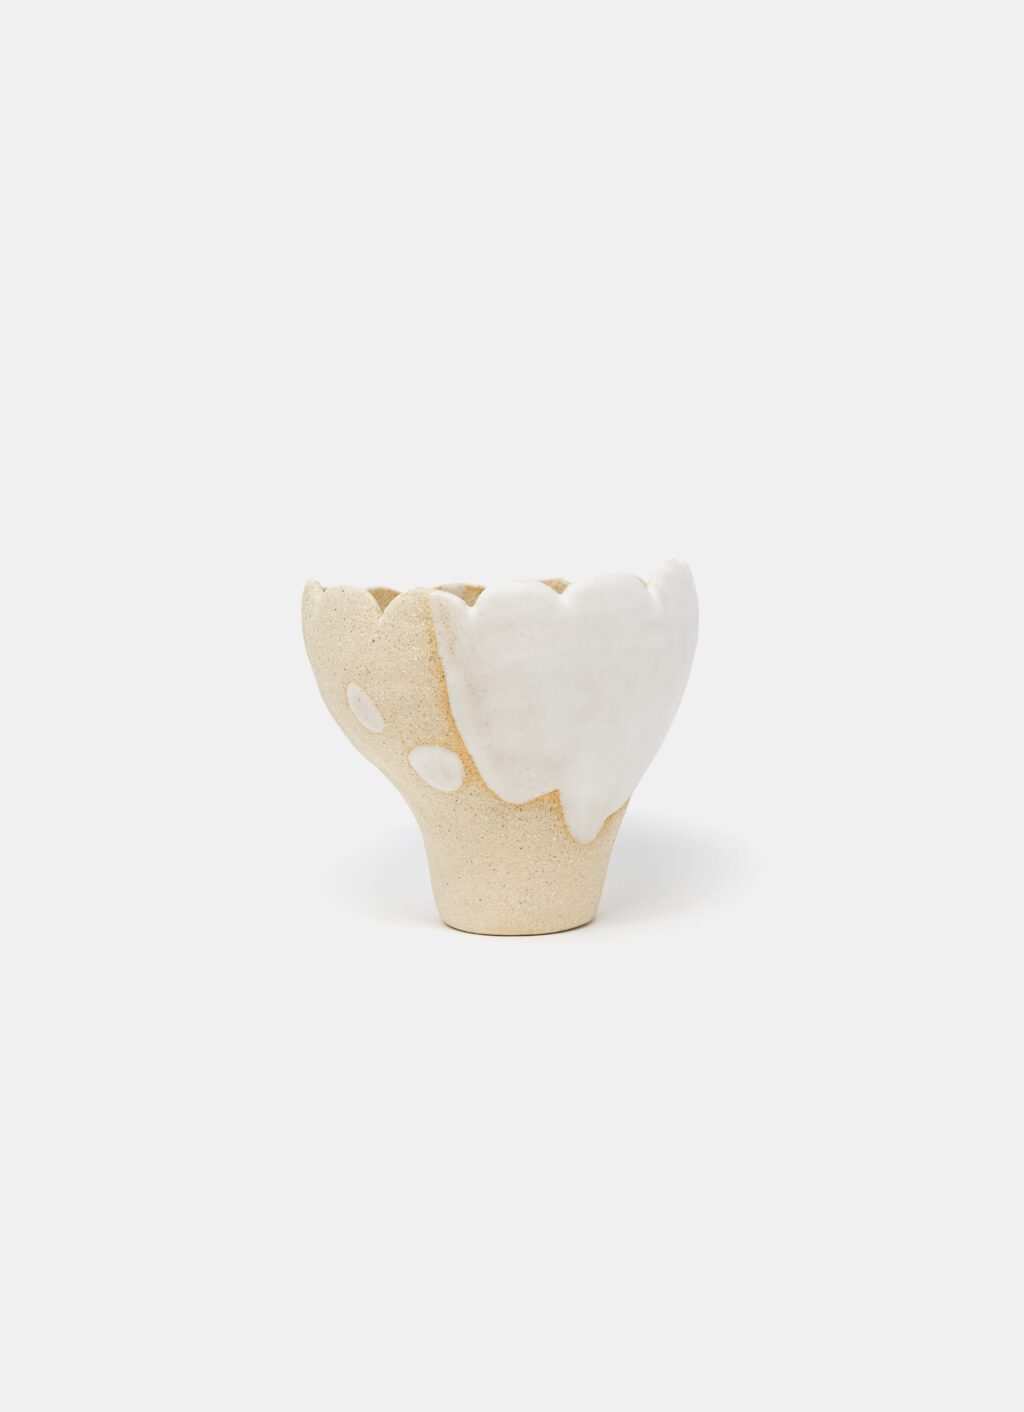 Mano Mani - Ikebana Vase - Light Stoneware and white glaze - 3